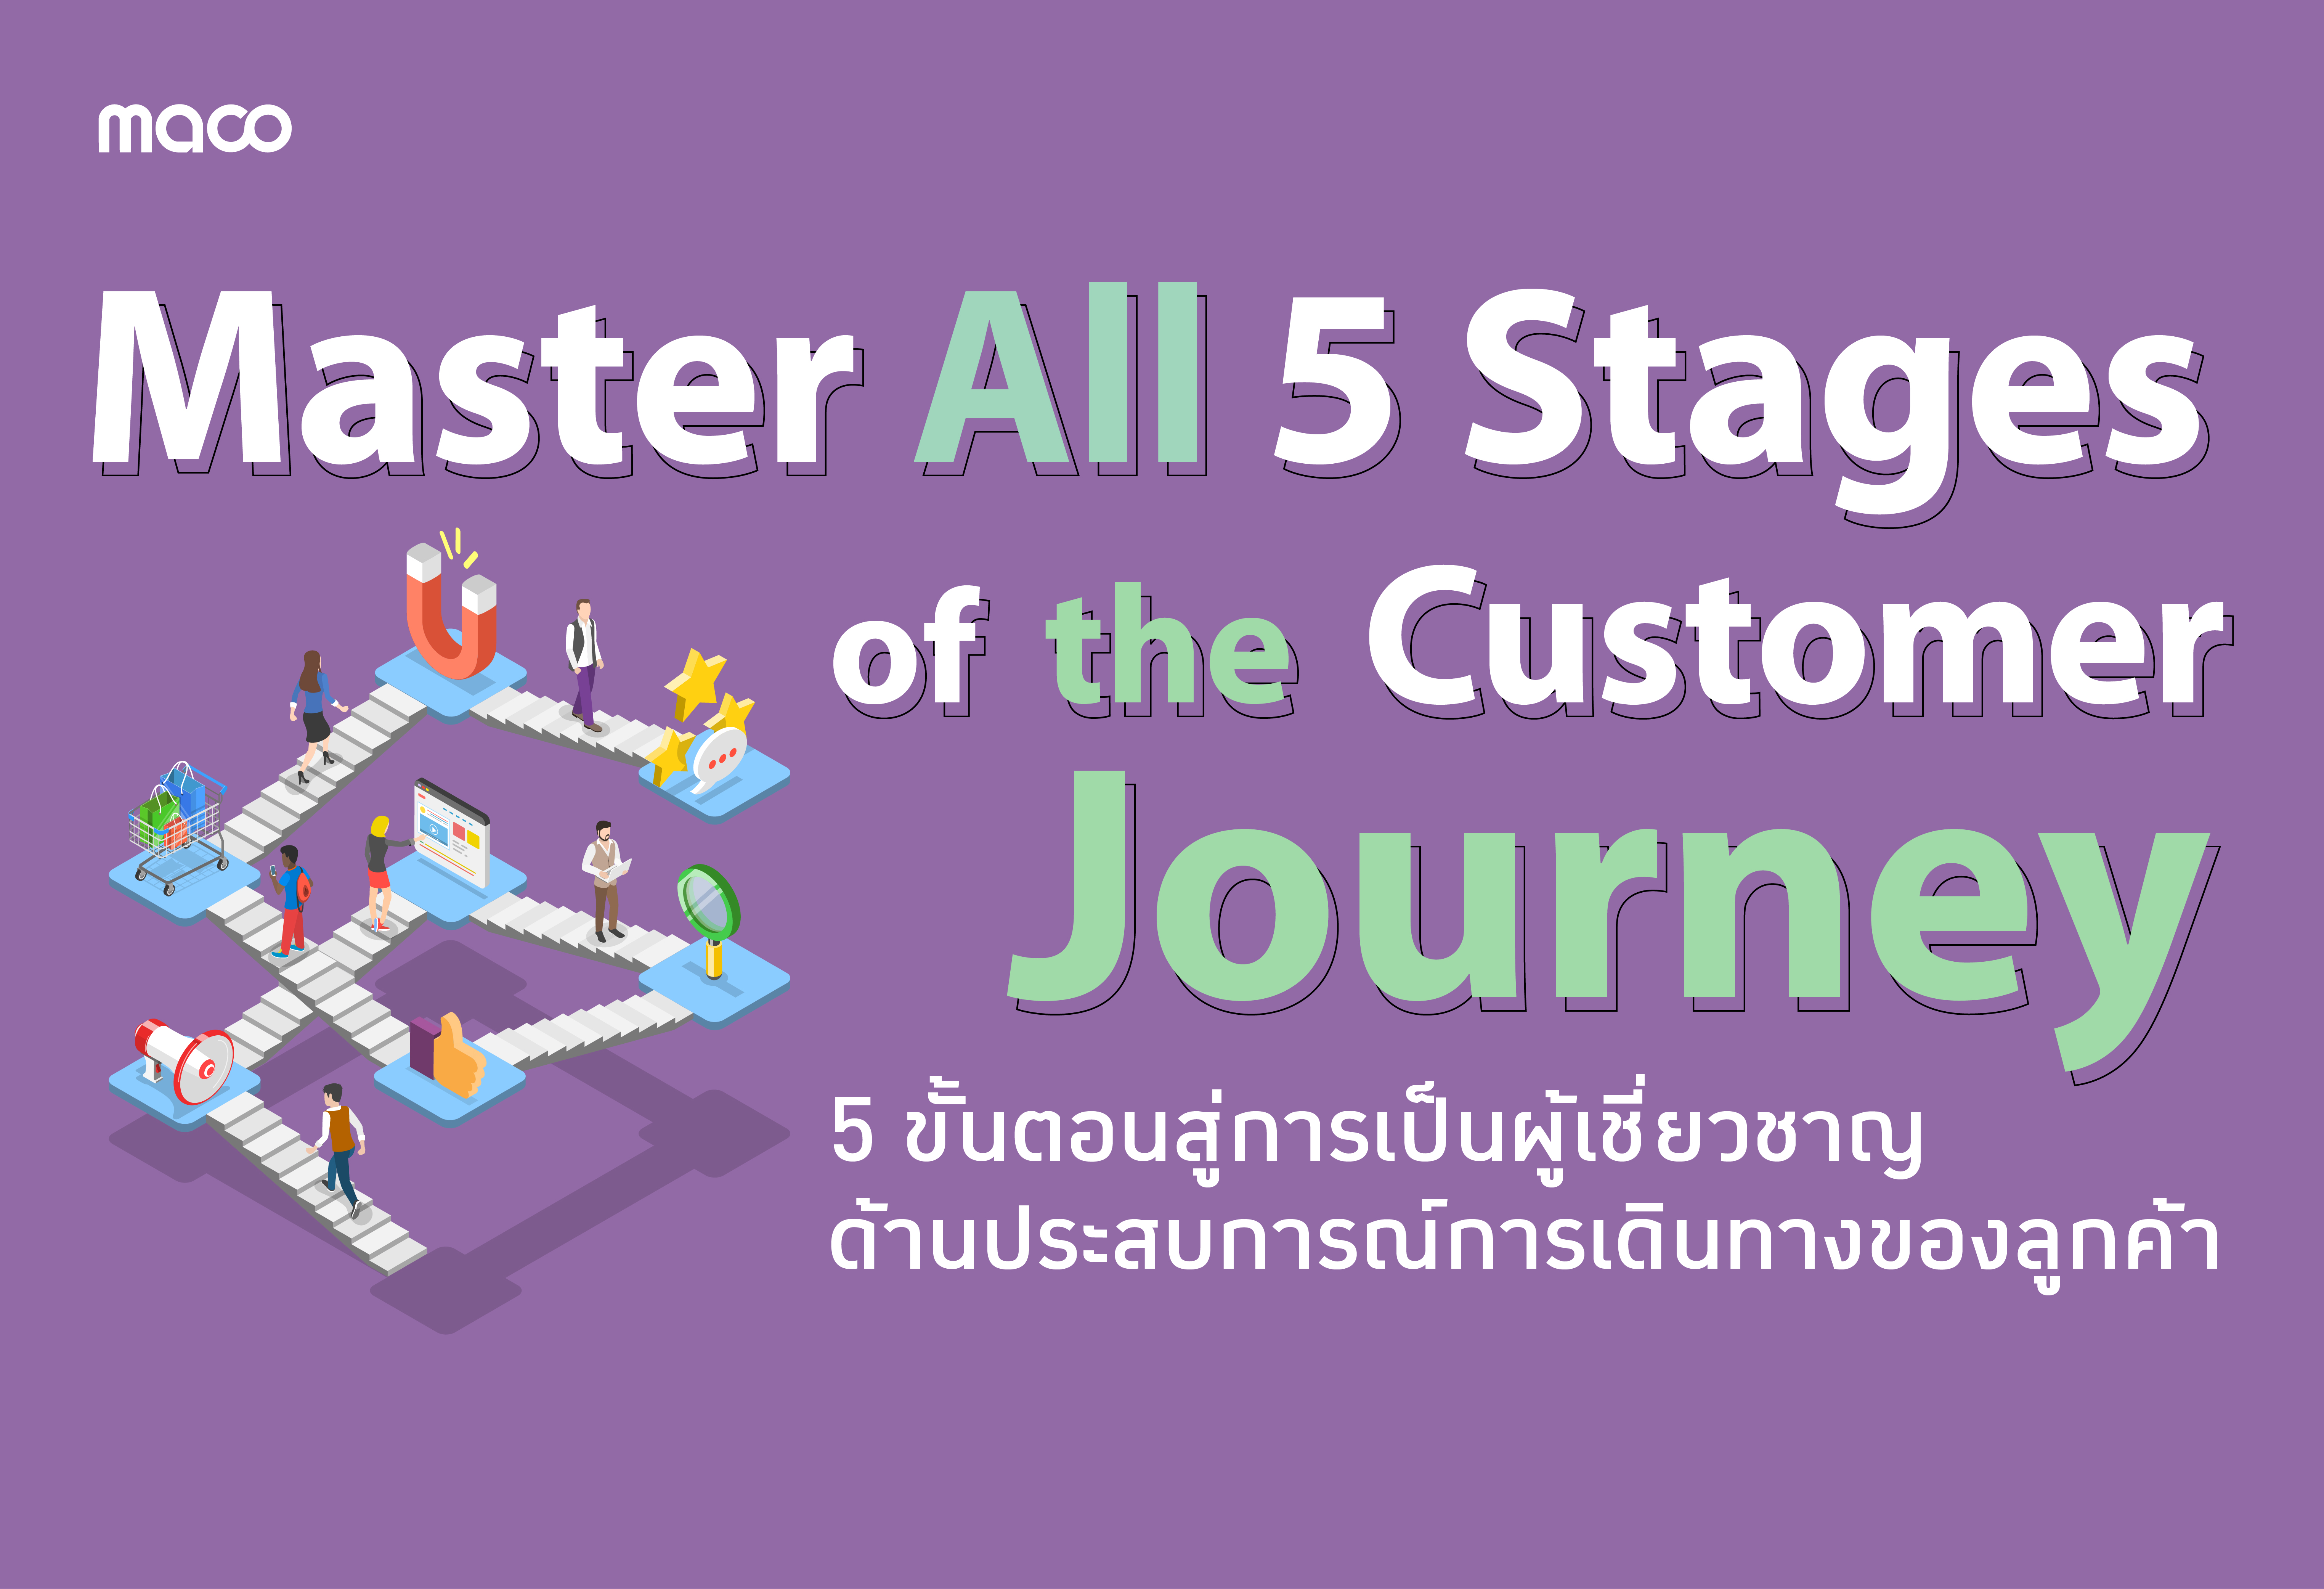 5 ขั้นตอนสู่การเป็นผู้เชี่ยวชาญด้านประสบการณ์การเดินทางของลูกค้า (Customer Journey)